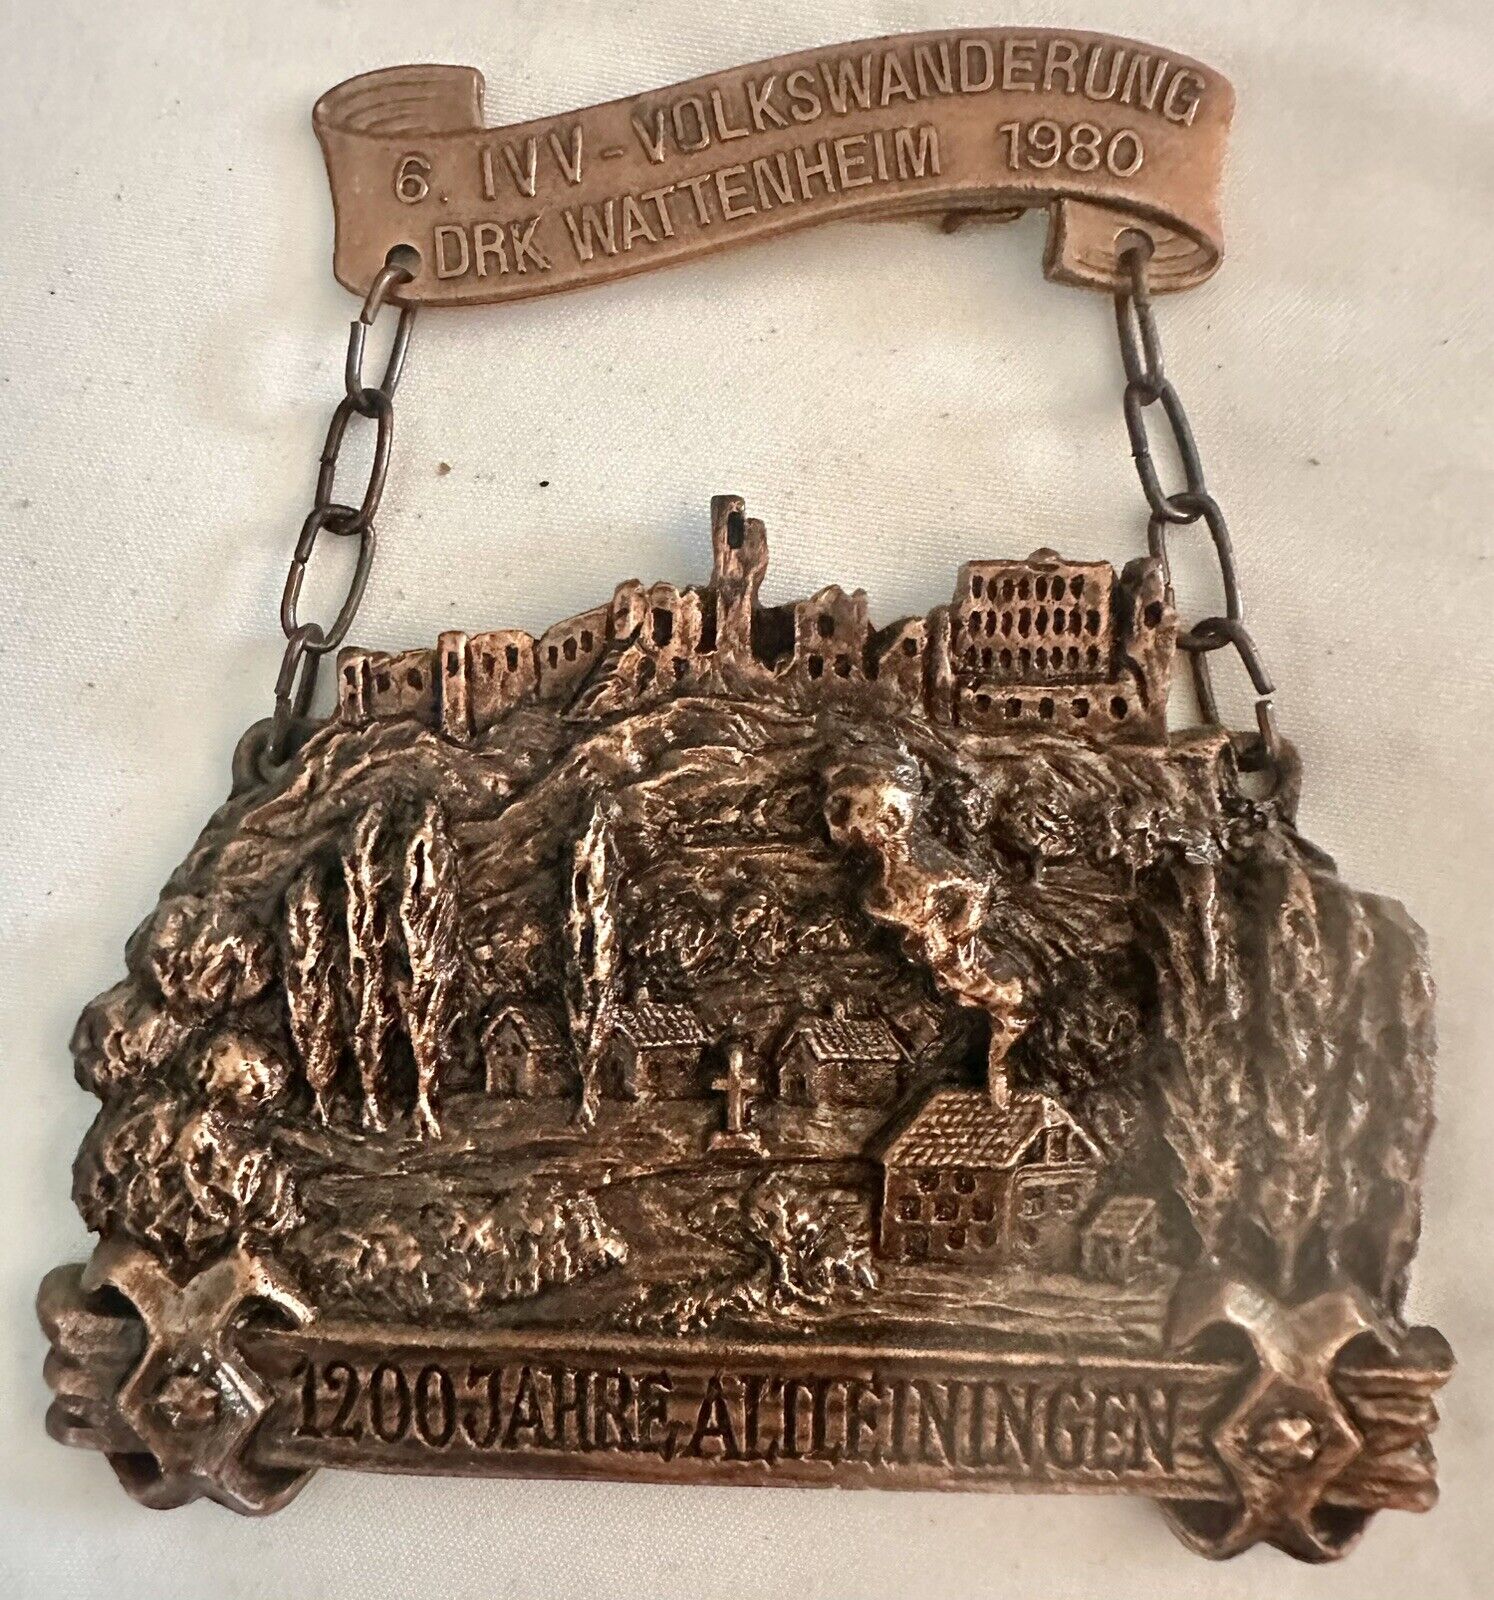 Vintage German Hiking Medal 1987 Lichtenberg Drk Wattenheim Medal Award